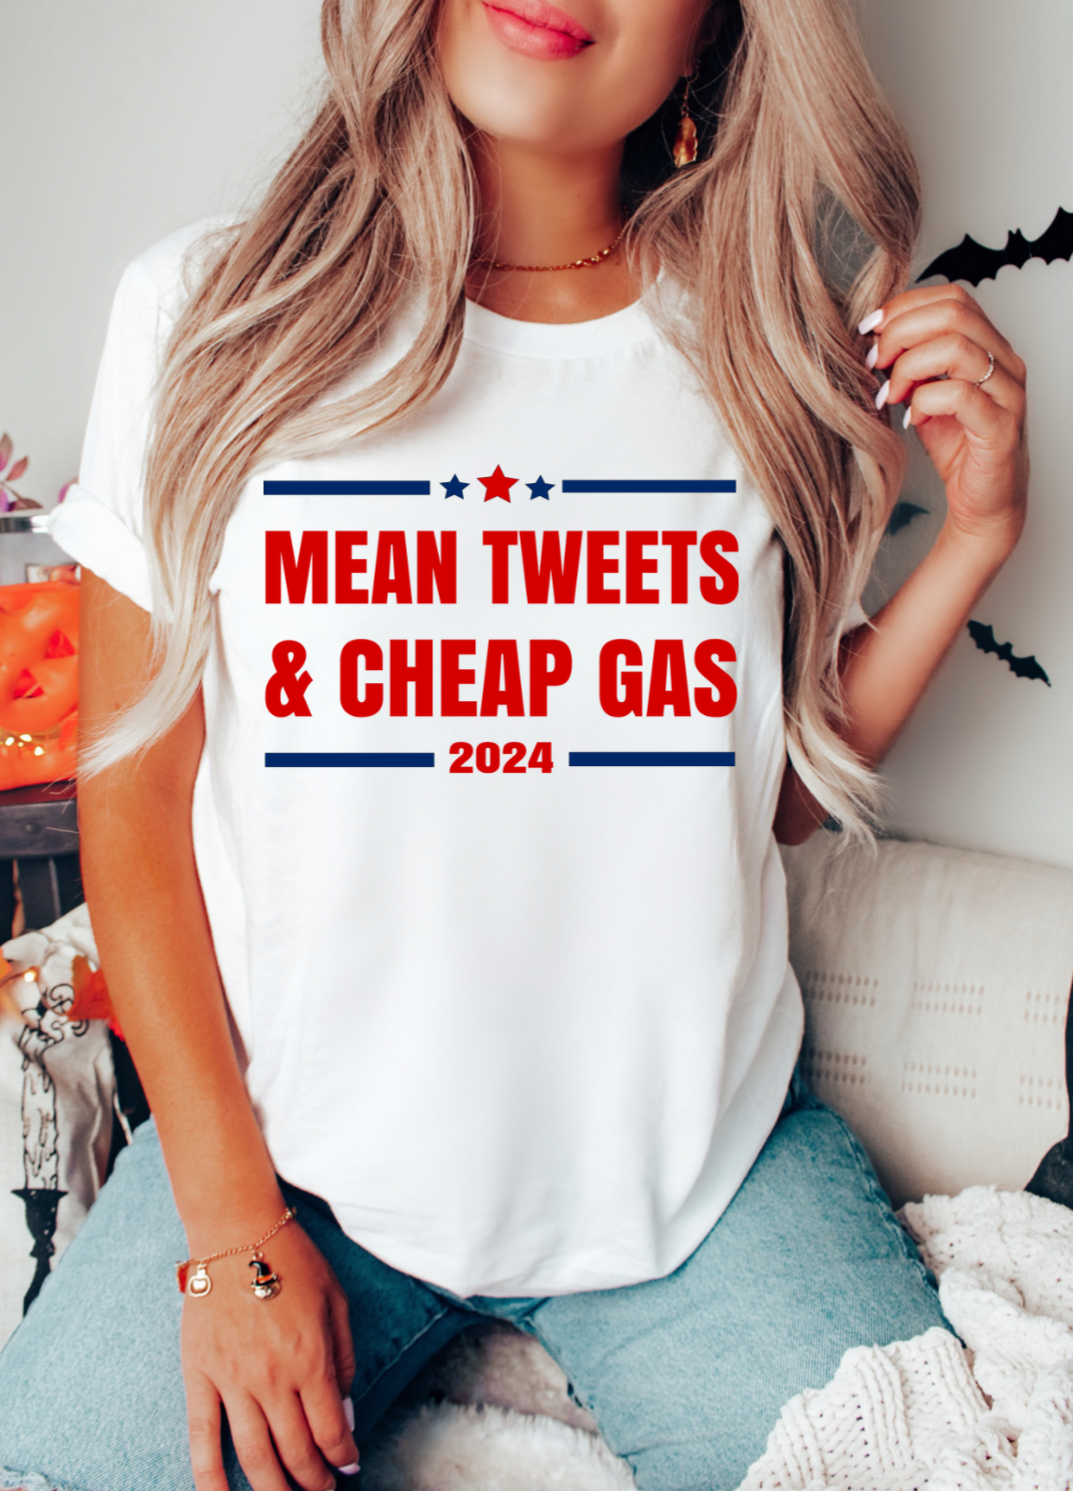 Mean tweets & cheap gas